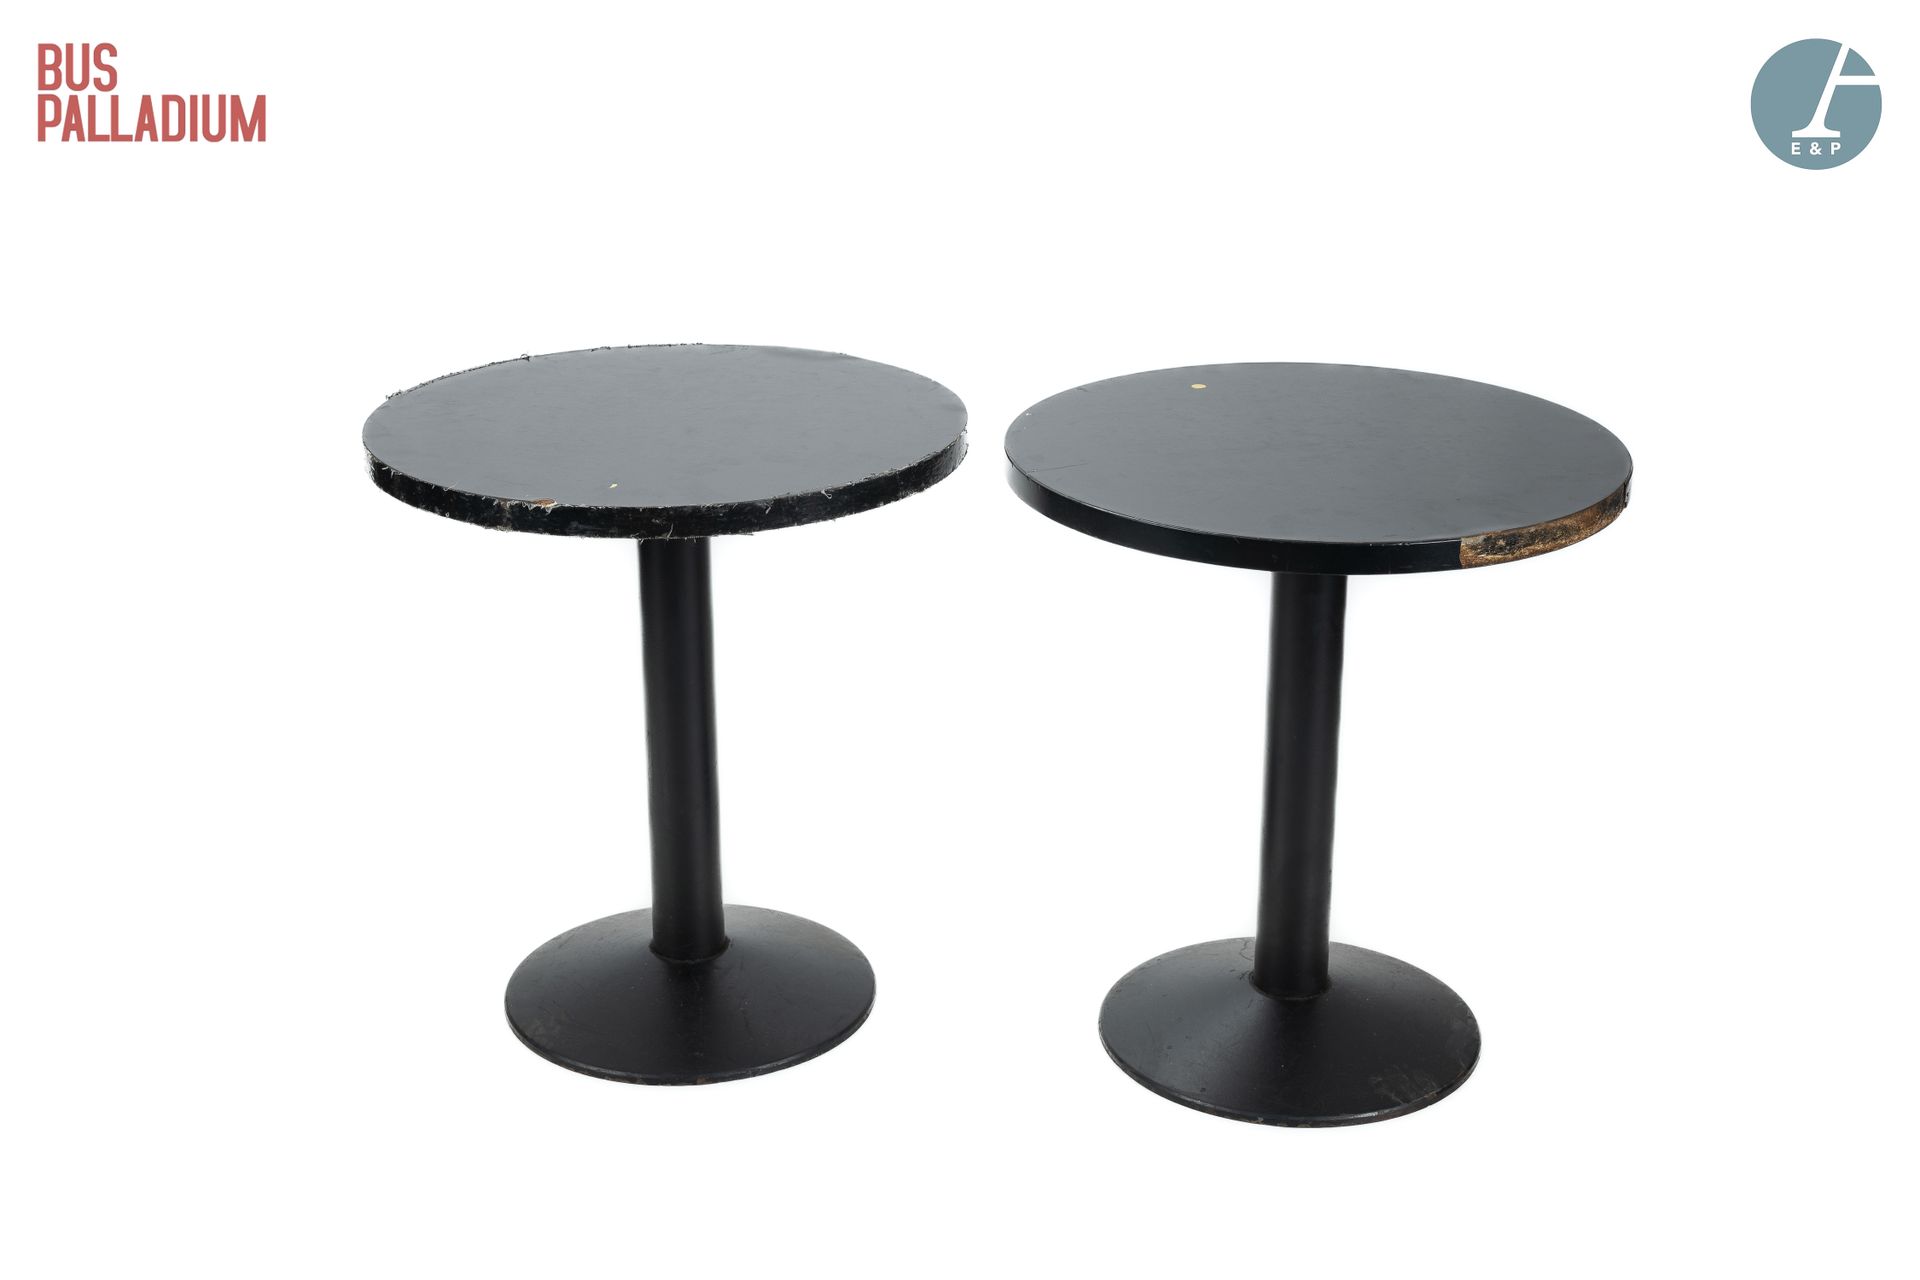 Null Aus dem Bus Palladium

Zwei runde Tische, die Tischplatte aus schwarzem Spe&hellip;